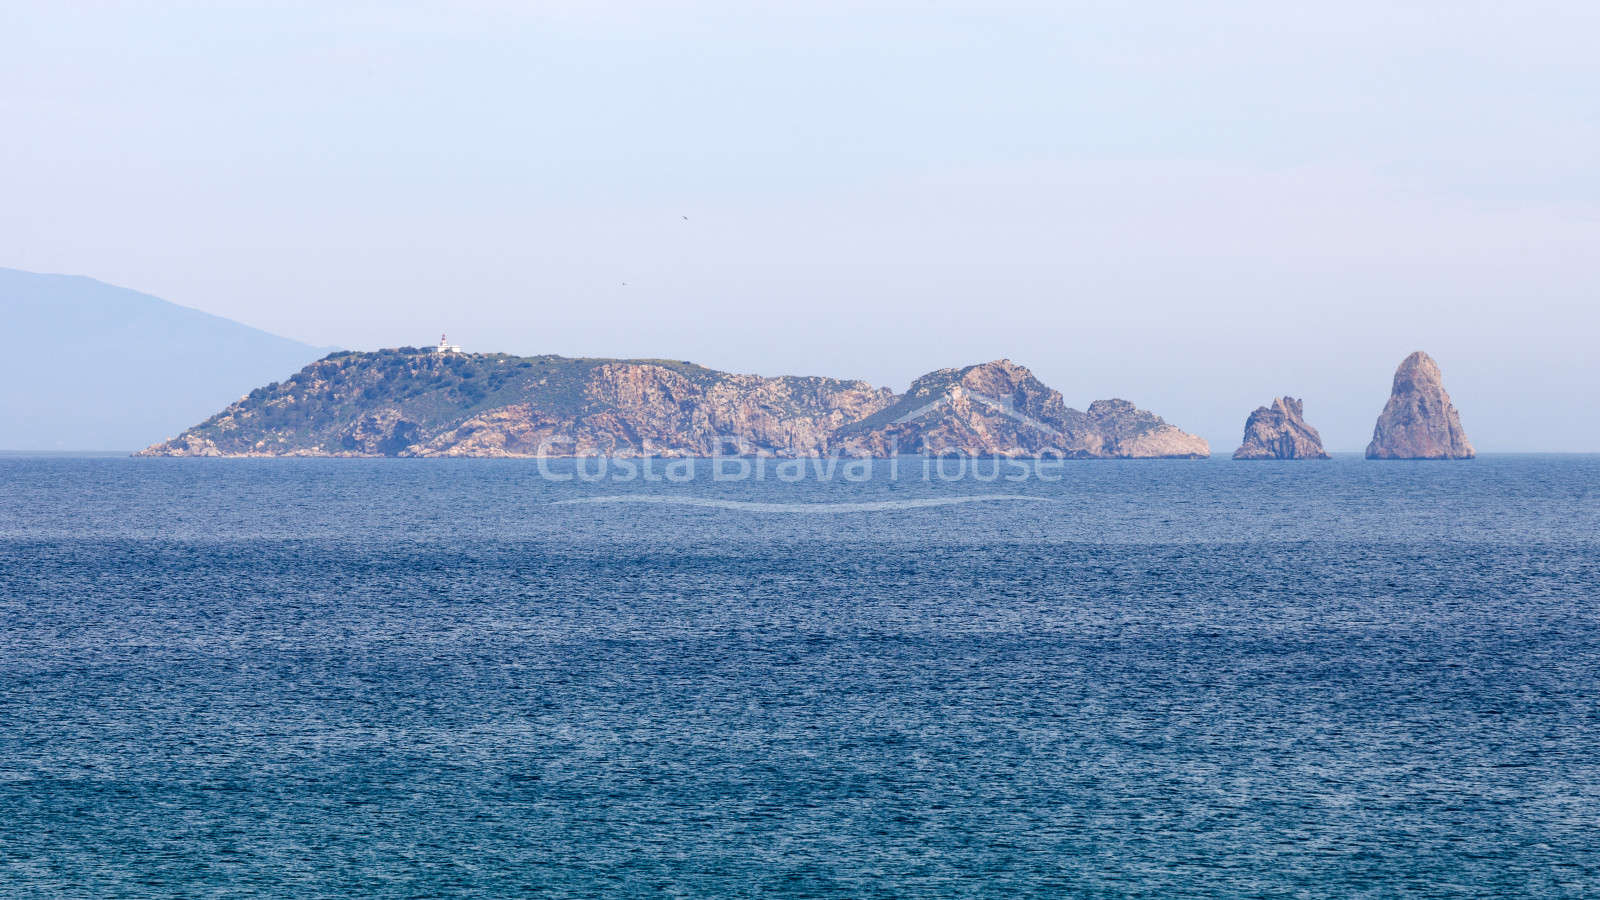 Exclusive villa de luxe à côté de la plage entre Begur et Pals, avec des vues incroyables sur la mer